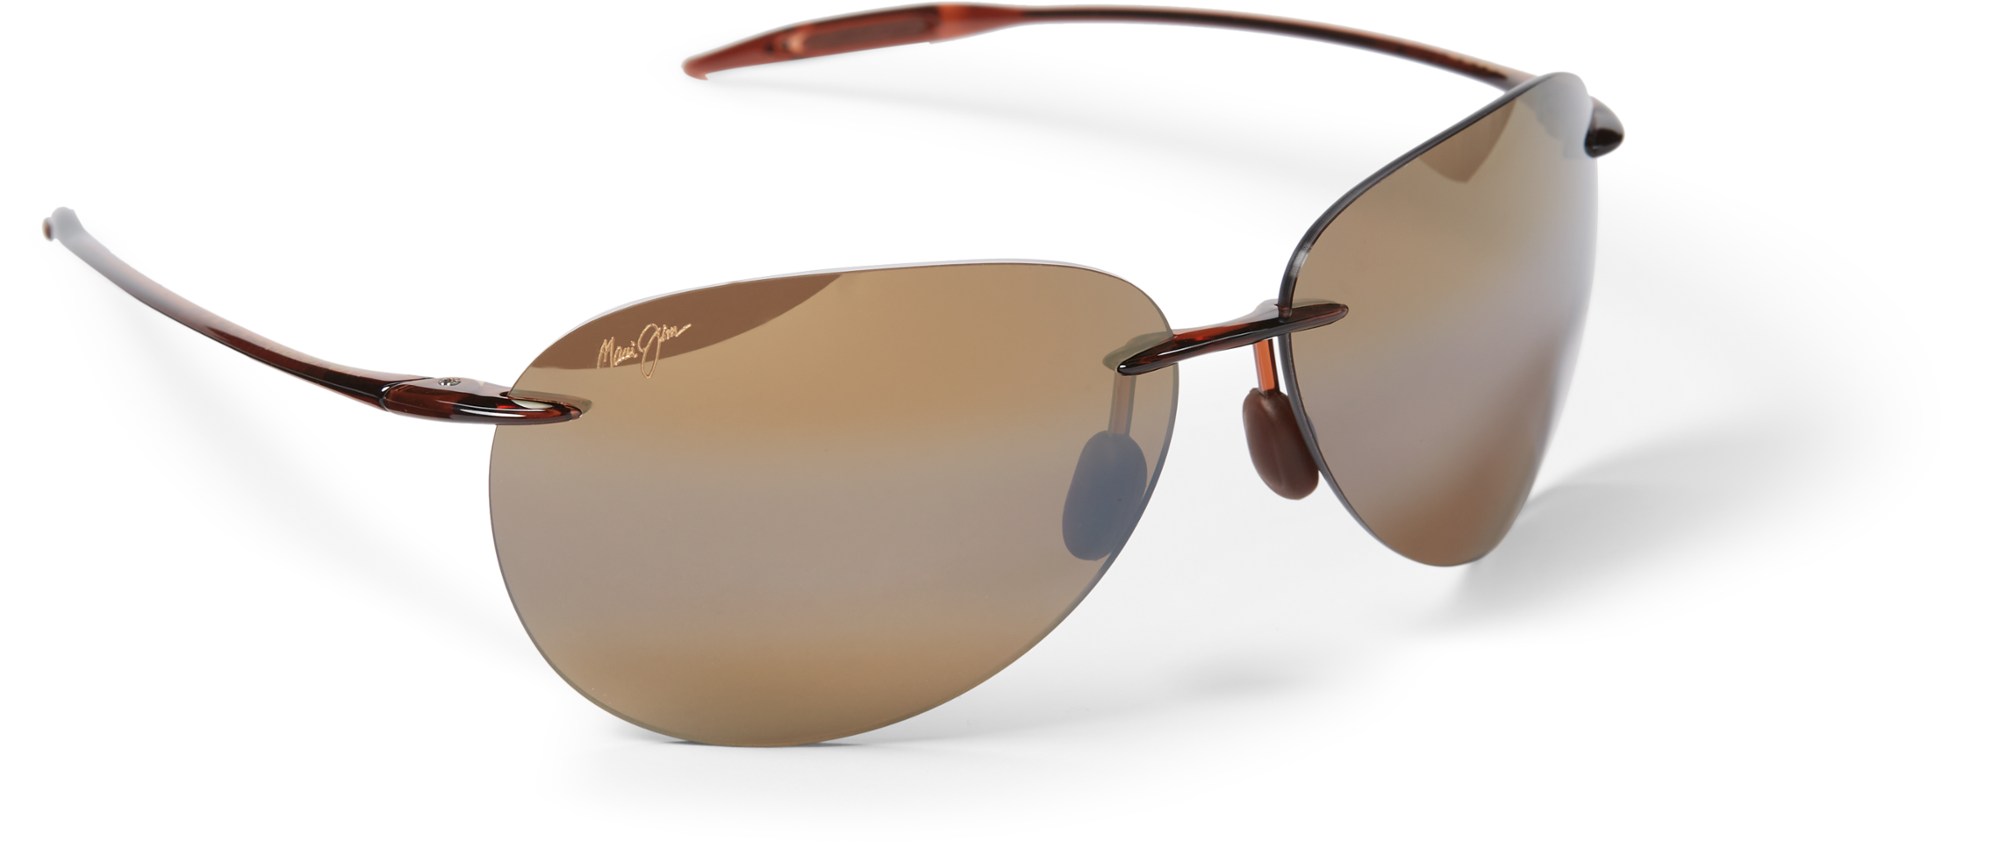 maui no 1086 nourish Поляризованные солнцезащитные очки Sugar Beach Maui Jim, коричневый